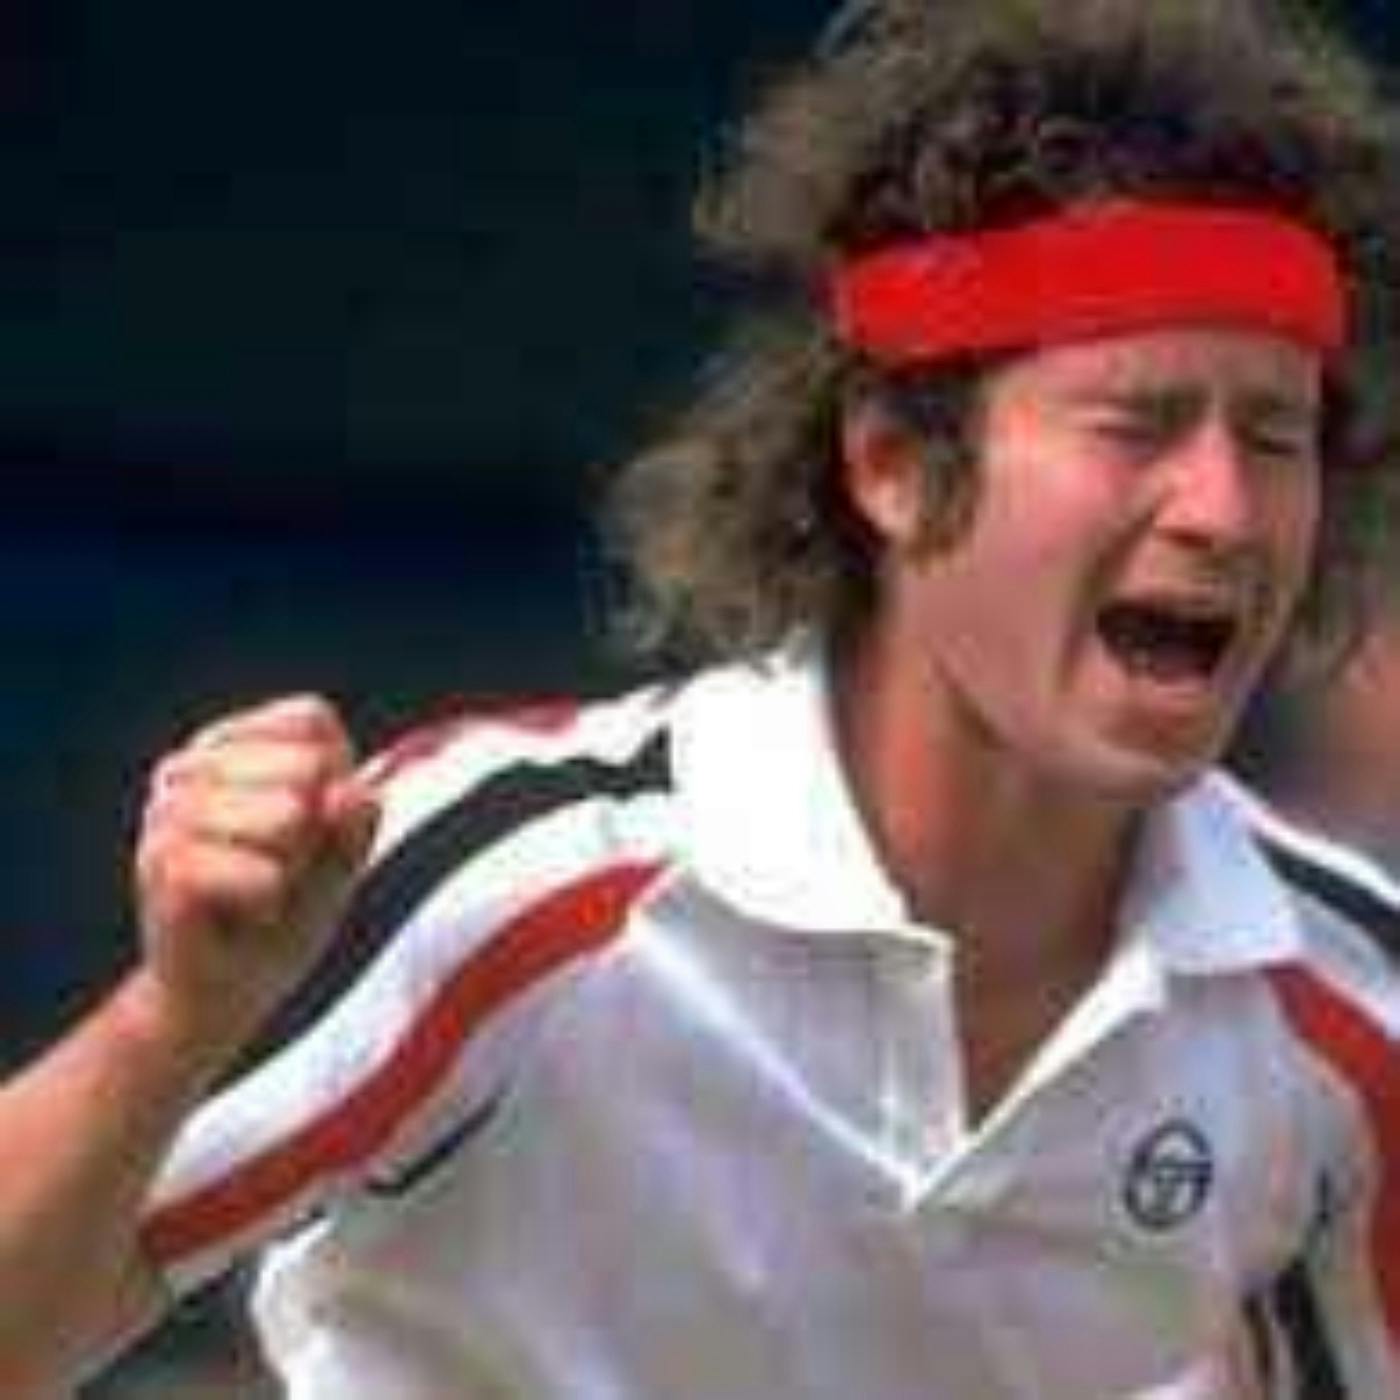 McEnroe’s Wimbledon Meltdown